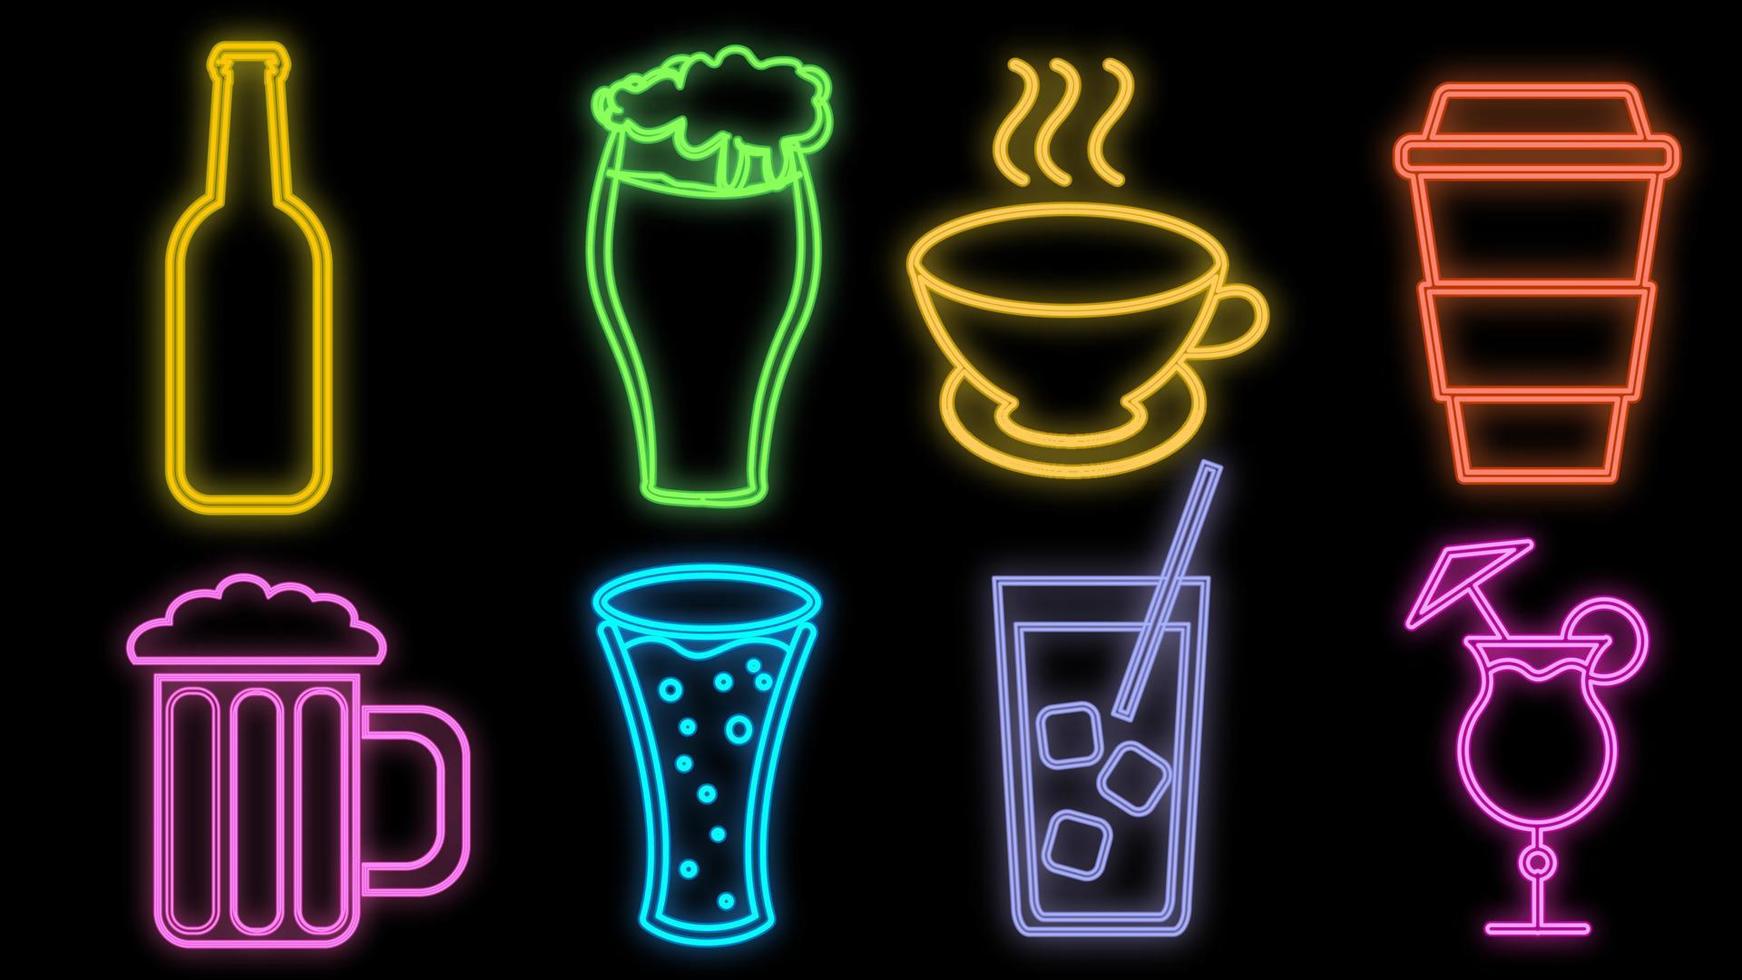 Satz hell leuchtender, mehrfarbiger Leuchtreklamen für eine Café-Restaurant-Bar, schön glänzend mit Cocktails und Getränken, Tee, Kaffee, Bier auf schwarzem Hintergrund. Vektor-Illustration vektor